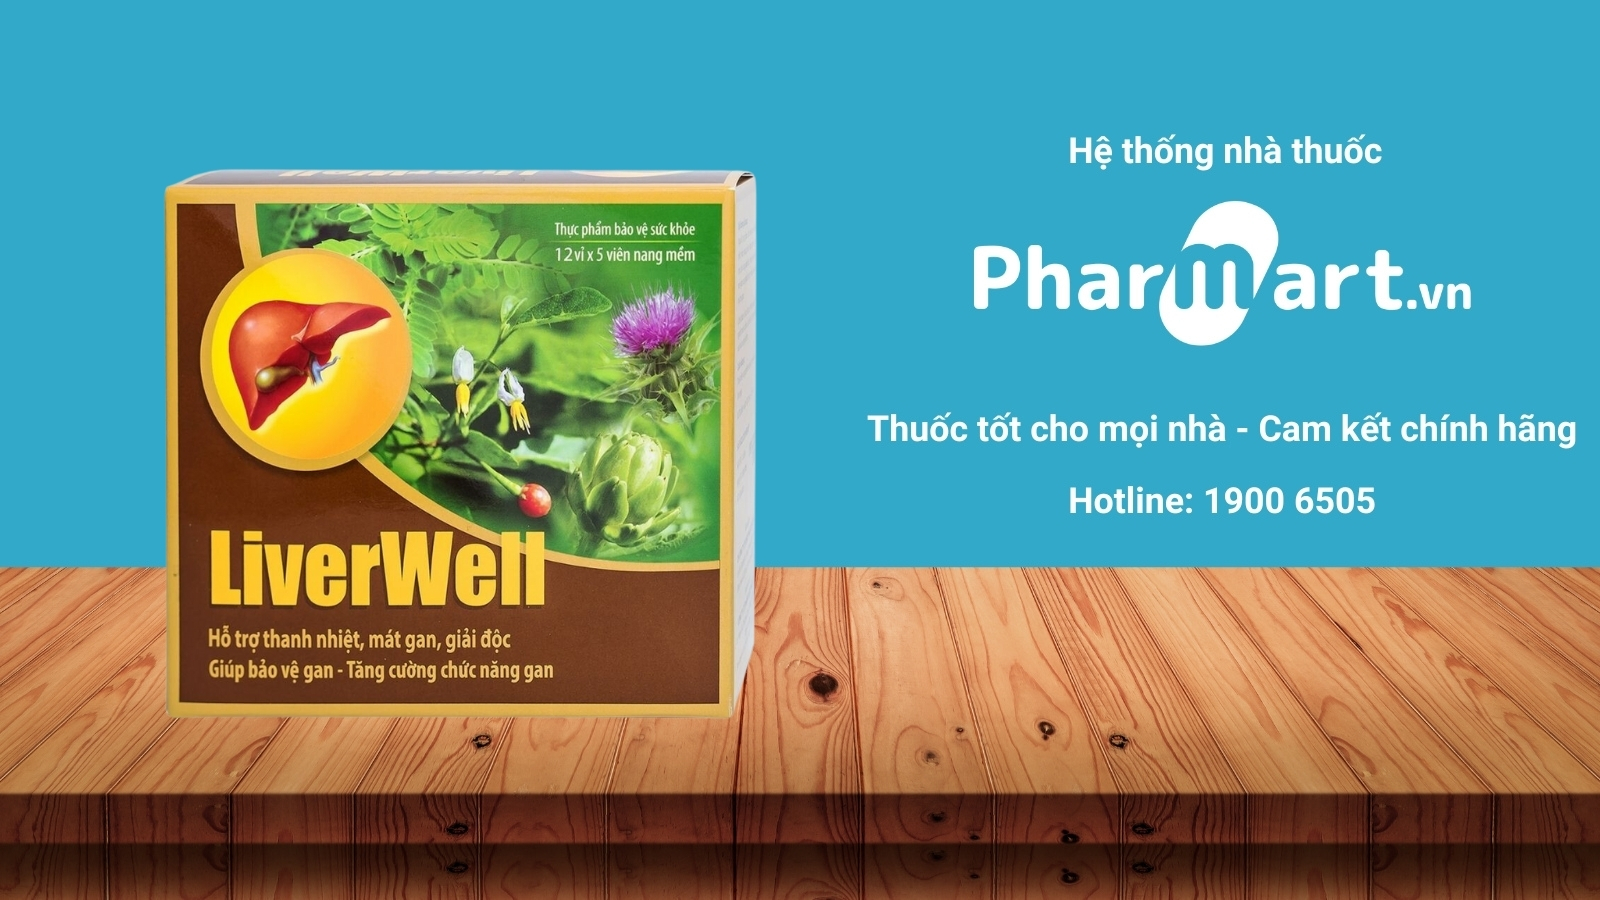 Mua ngay Liverwell chính hãng tại Pharmart.vn.